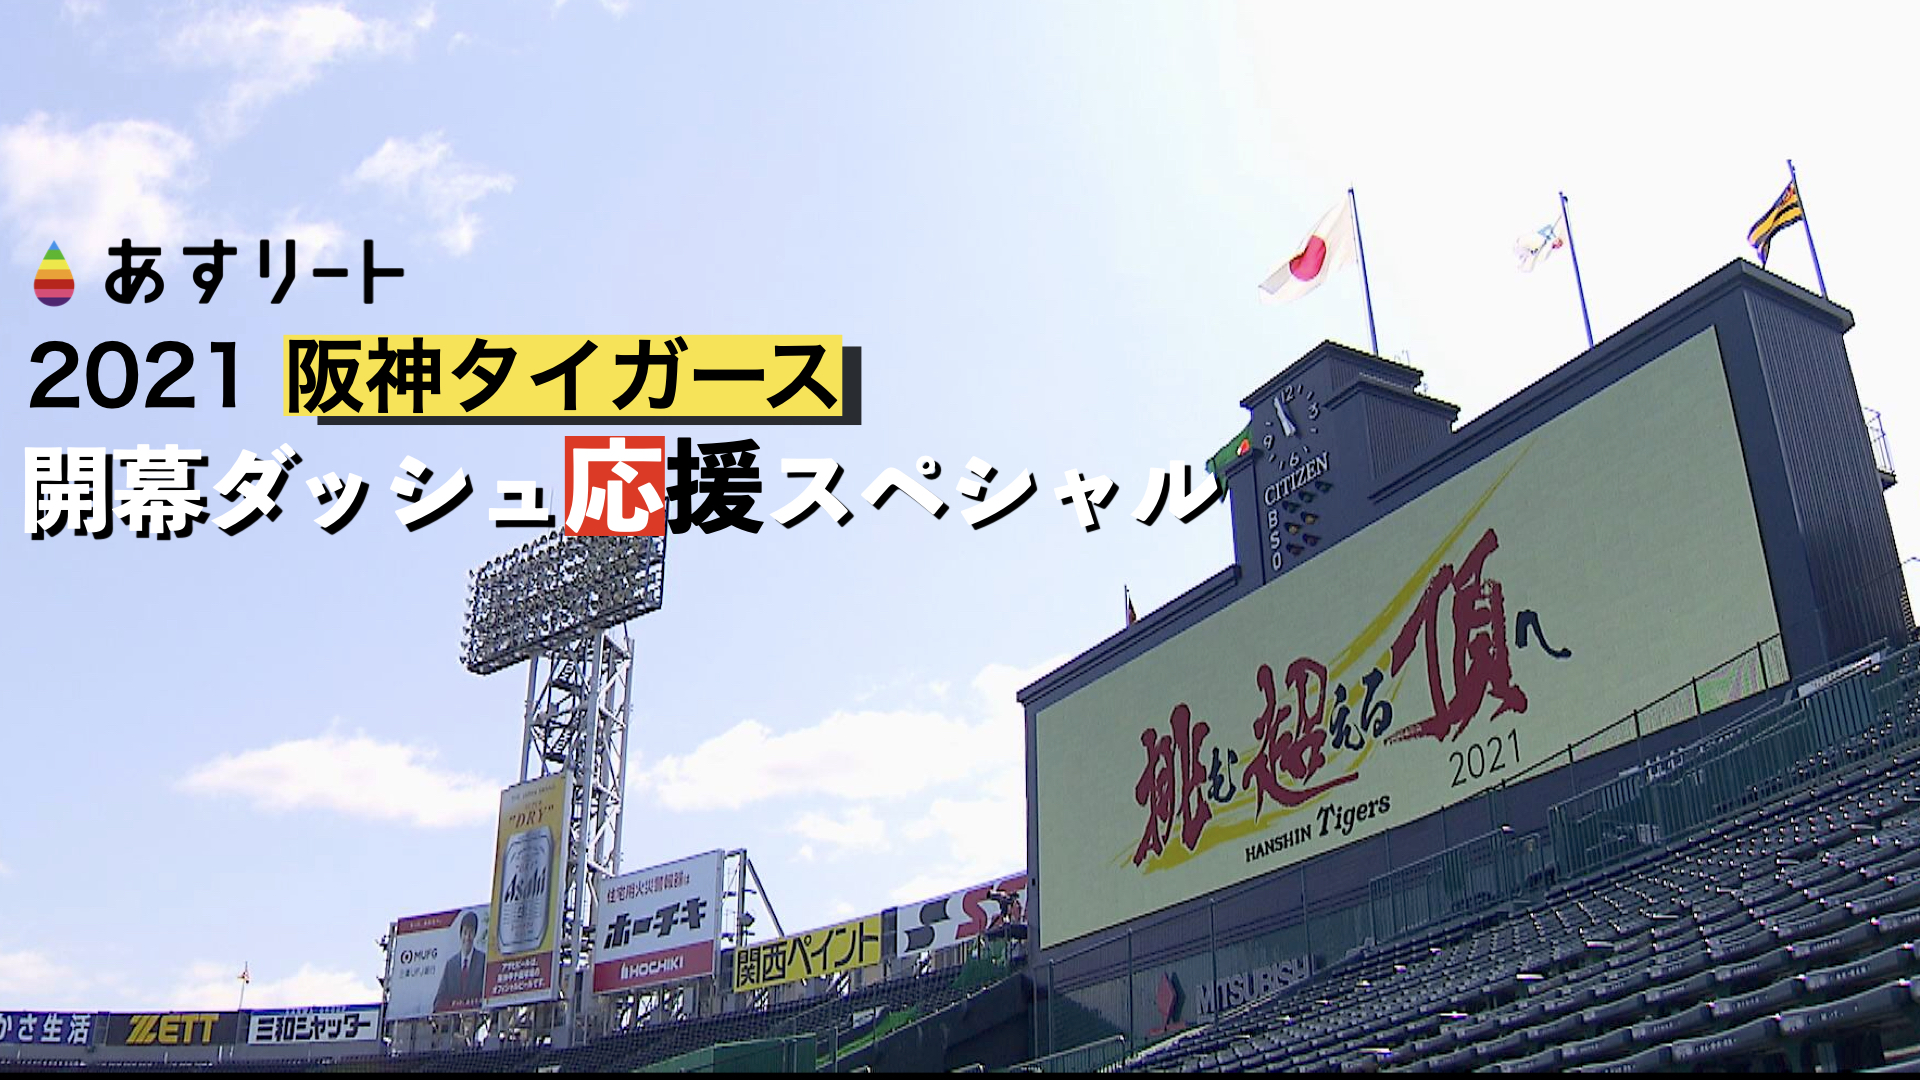 阪神タイガース 21 Hanshin Tigers 開幕ダッシュ 全力応援スペシャル あすリートチャンネル